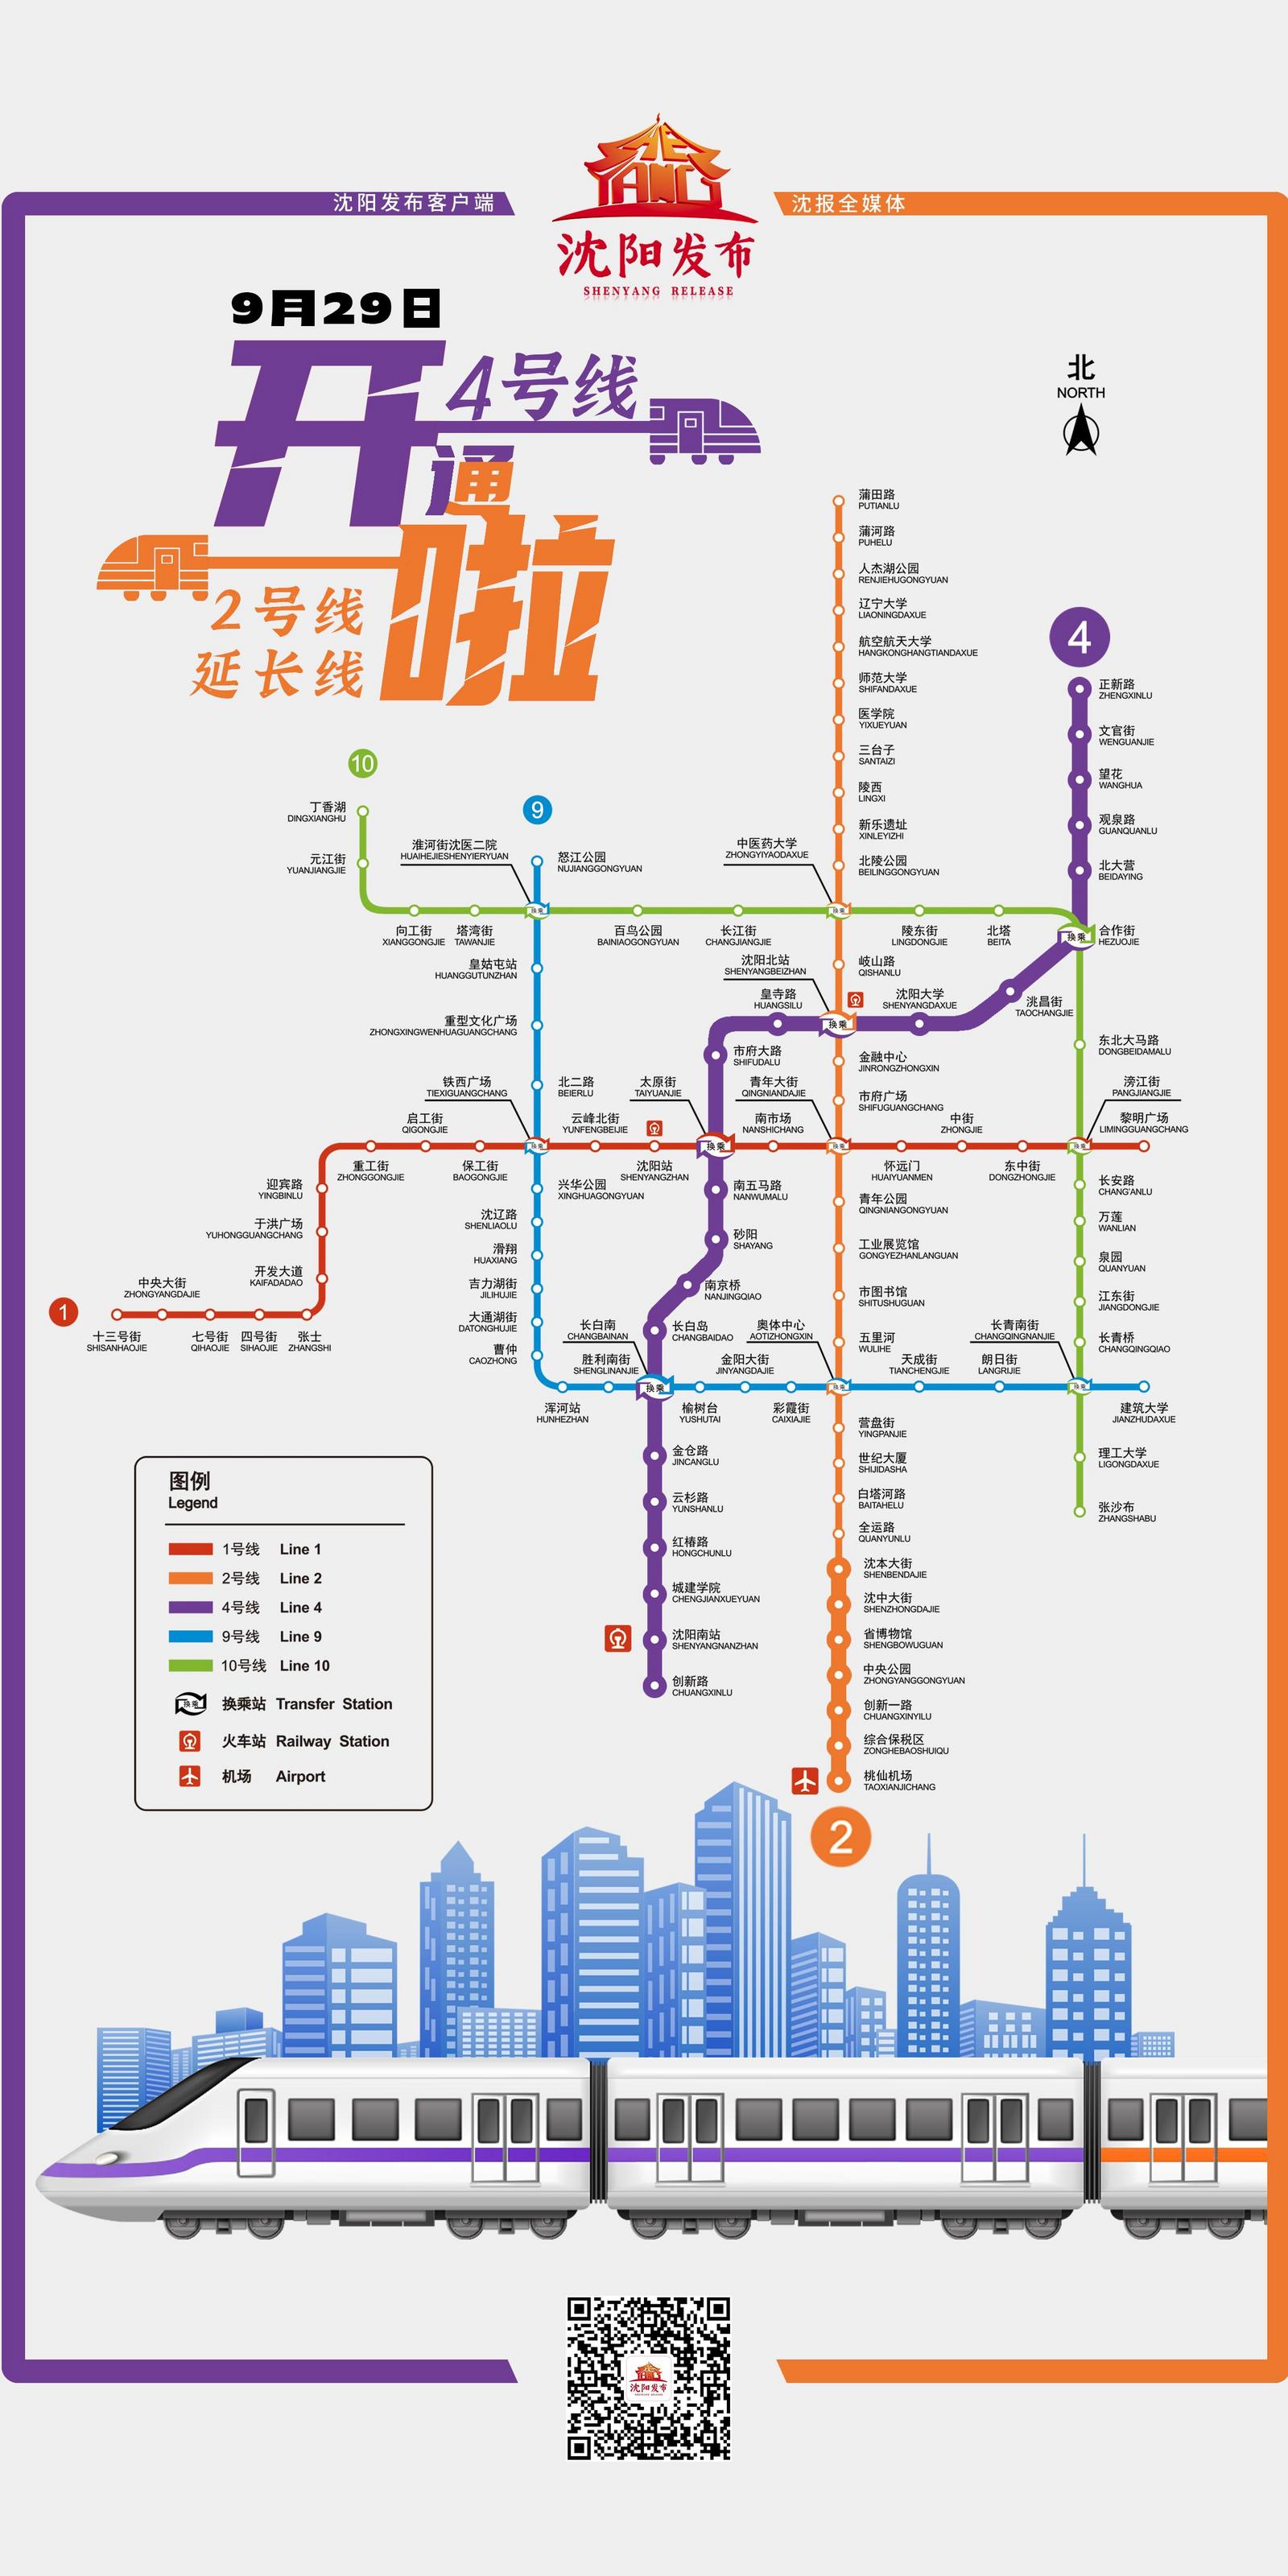 沈阳地铁4号线,为沈阳地铁开通运营的第5条线路,是线网中又一条南北